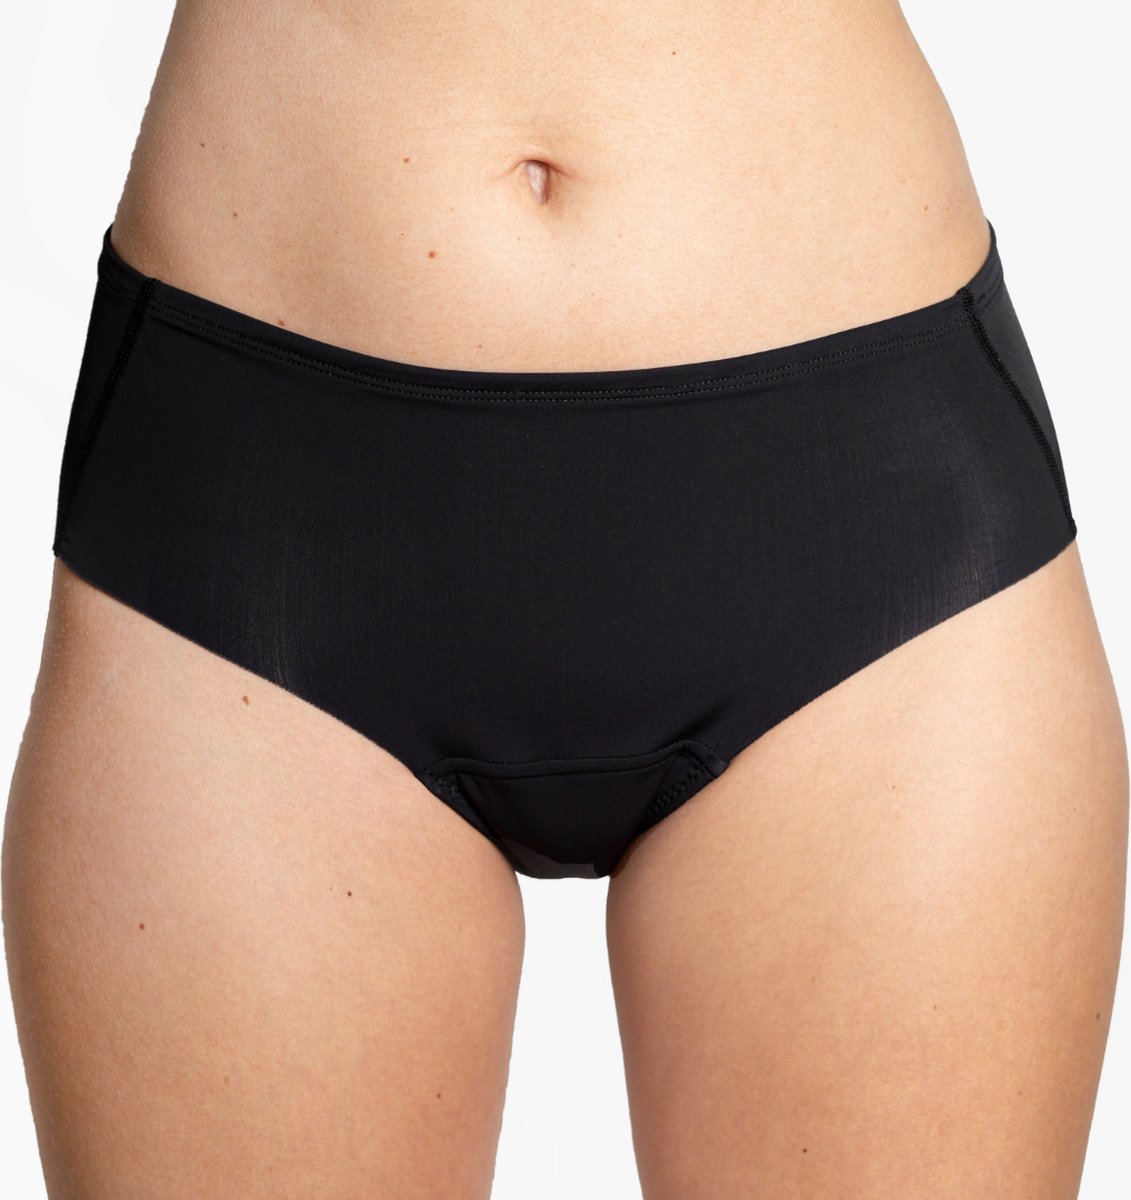 Absorberend sportondergoed bij urineverlies - Sportslip bij menstruatie - Period proof panties - Seamless Incontinentiebroekje - Ongesteld